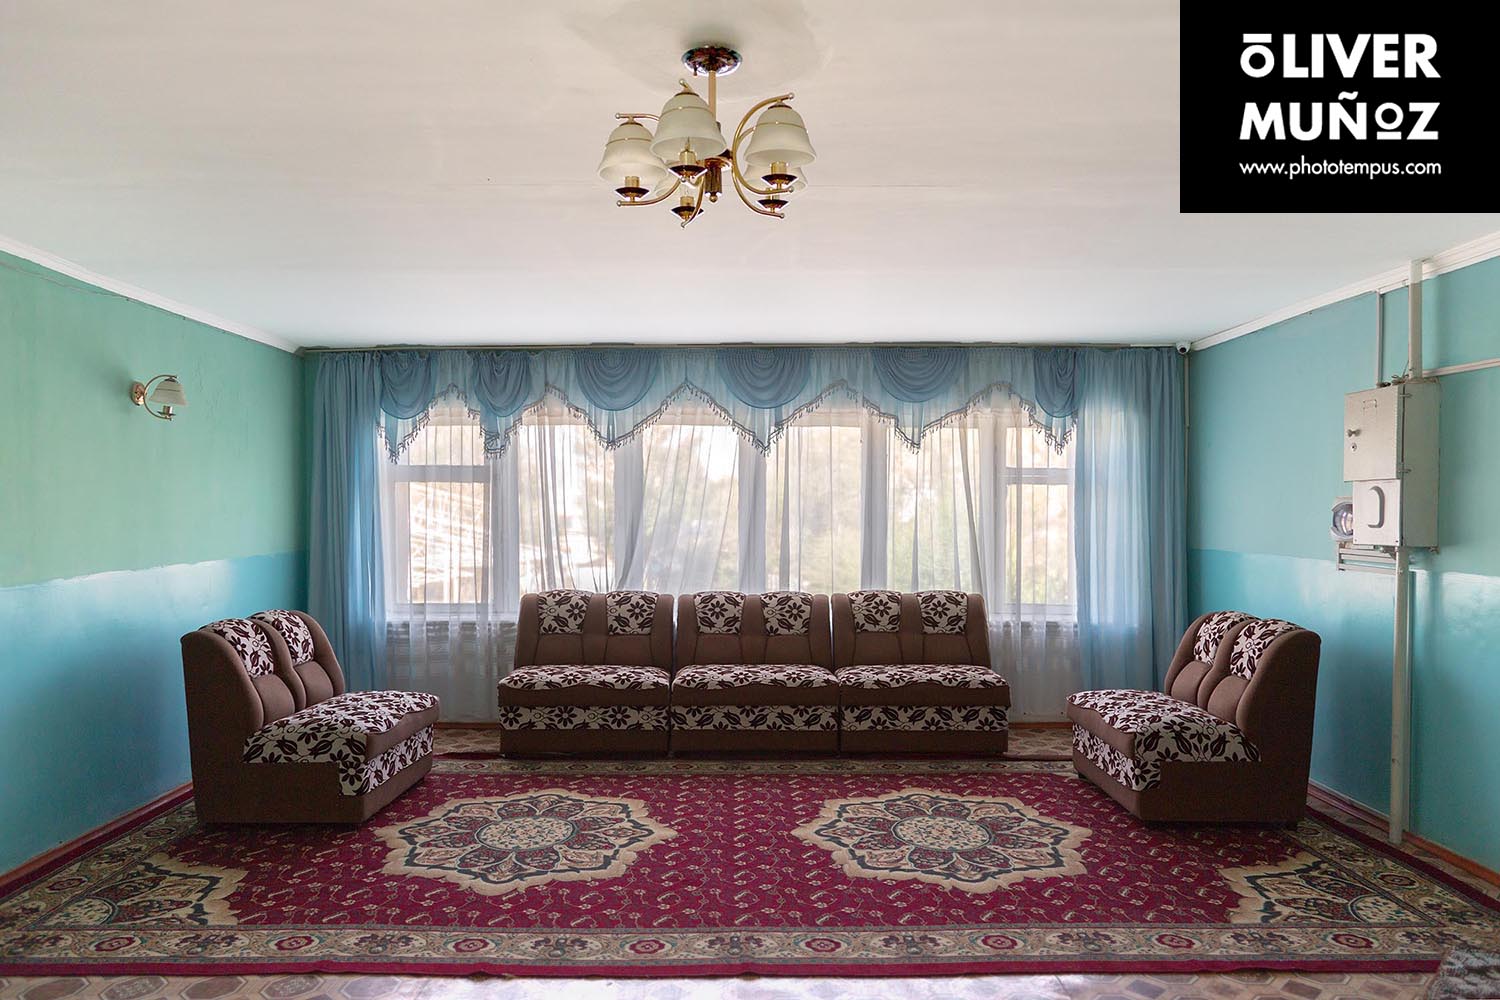 El hotel Ala-Too, un reducto soviético “habitable” ( Kyrgyzstan )